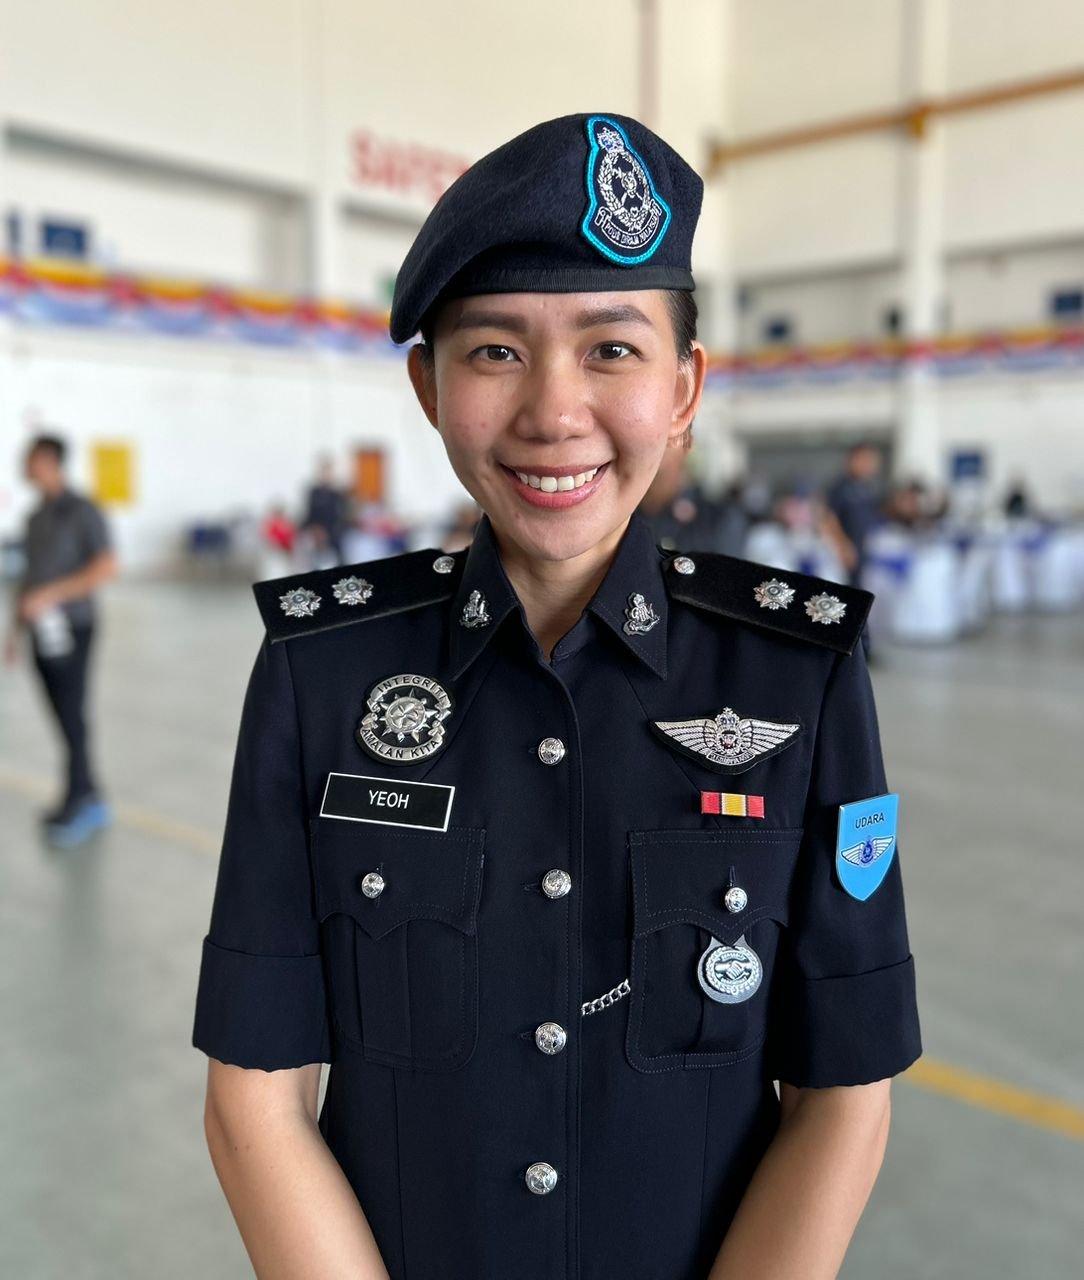 杨玉琪成为该警队飞行部队首名考获飞行执照的华裔女警员。